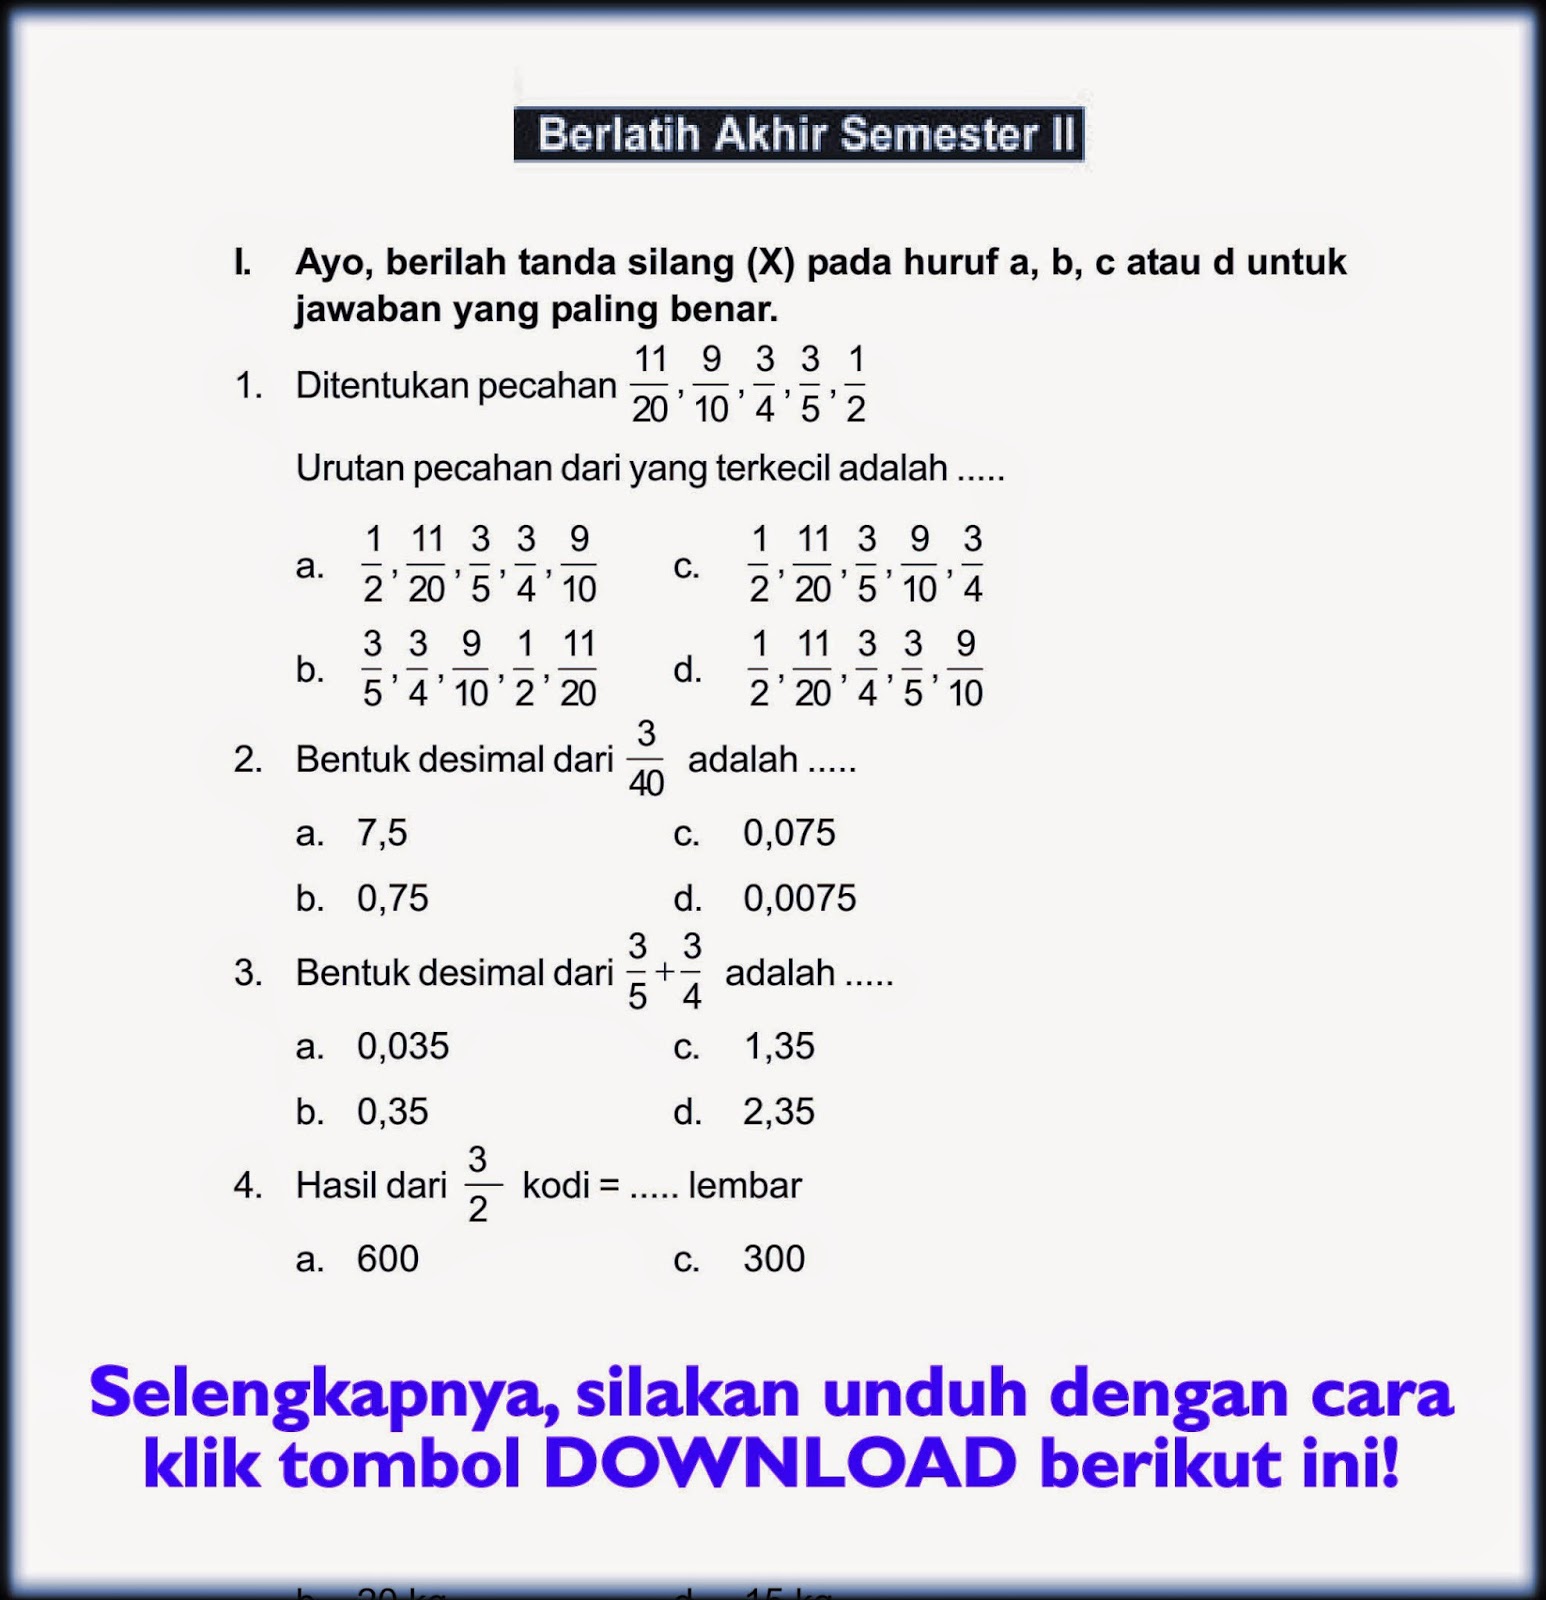 Berikut ini penulis sajikan Soal LatihanYang Di rangkum Bagi Pembaca   Soal Bahasa Indonesia Kelas 6